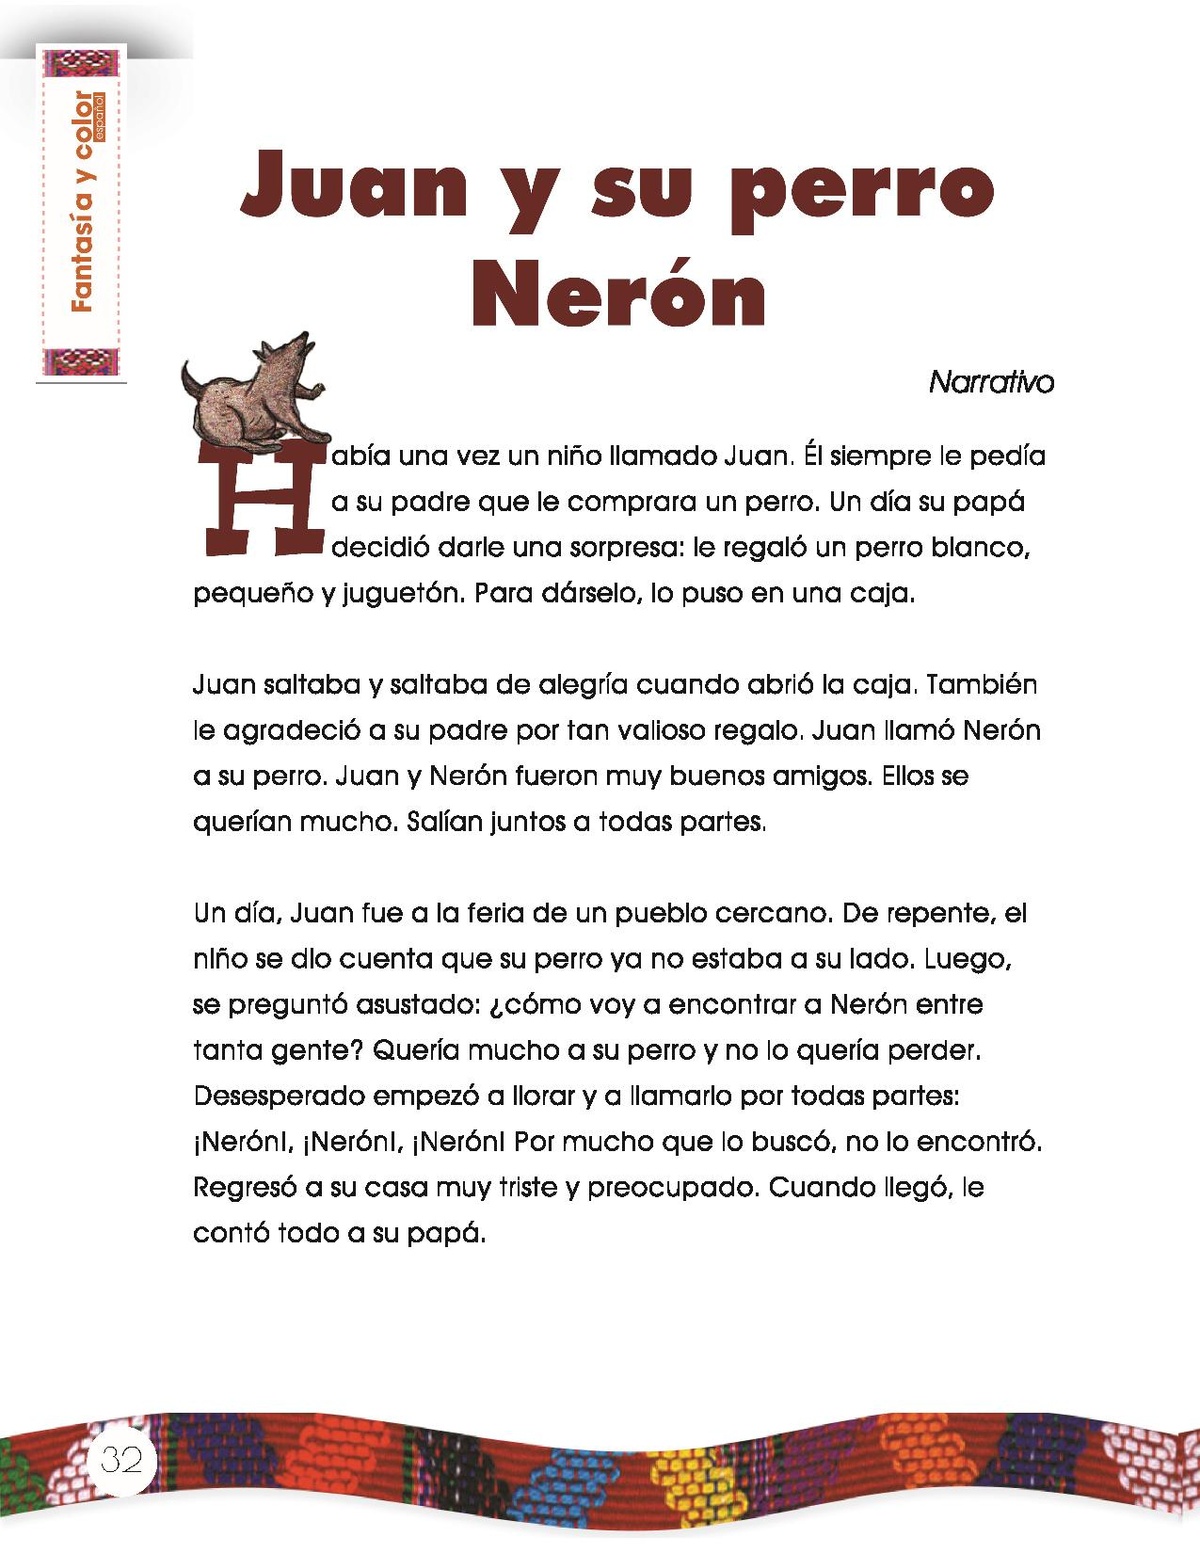 Archivo:Juan y su perro Neró - CNB